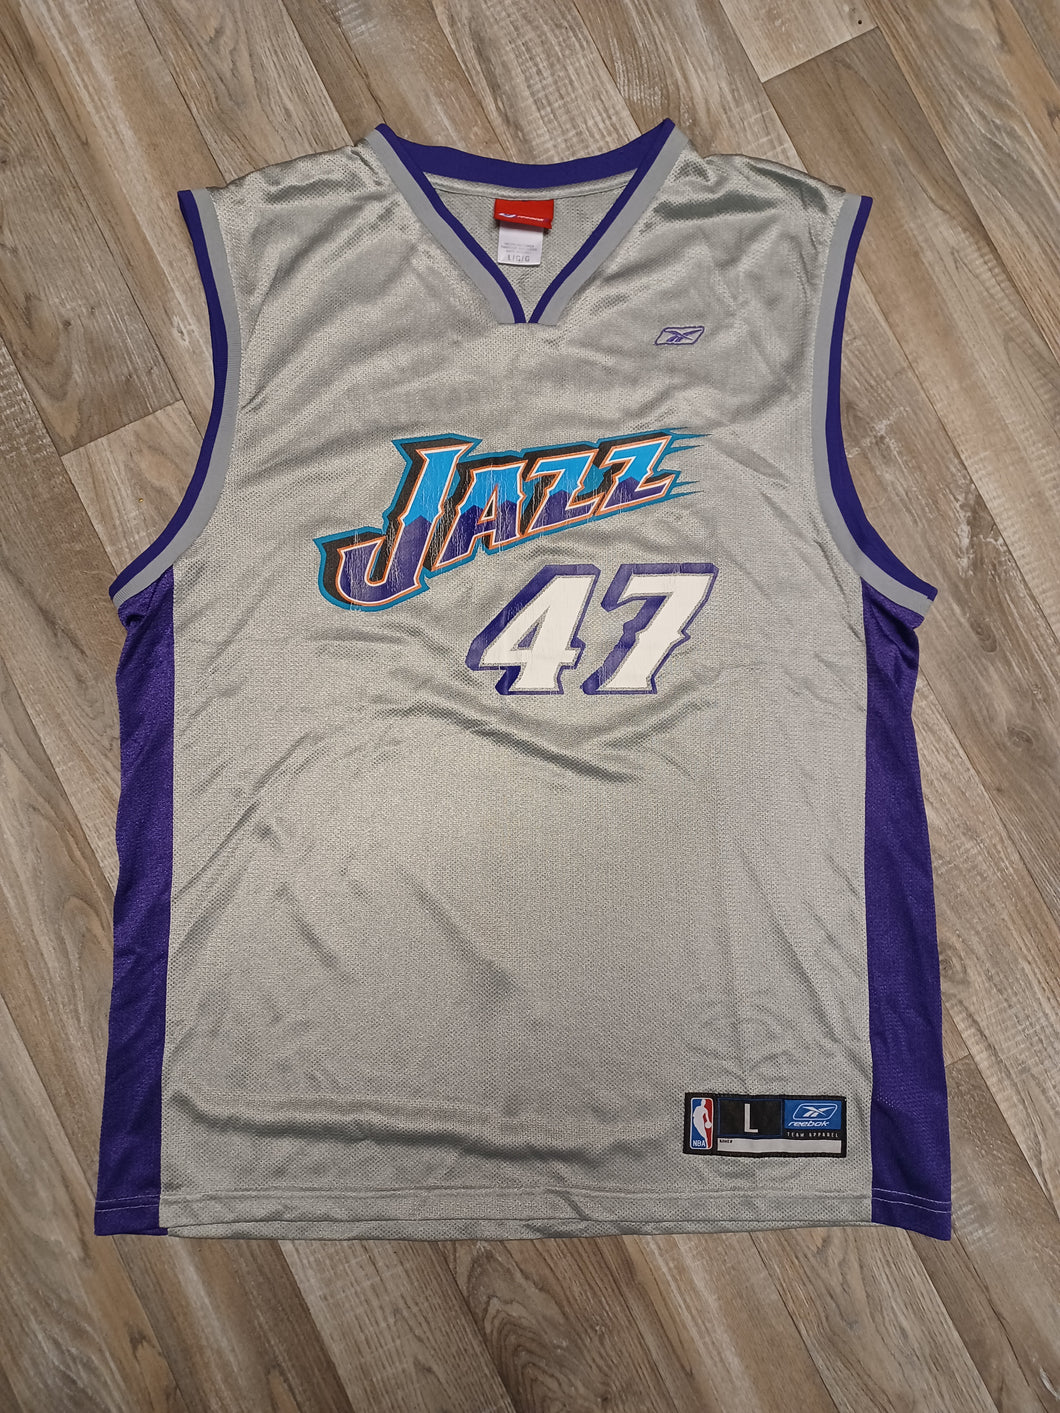 Andre Kirilenko Utah Jazz Jersey Size Large